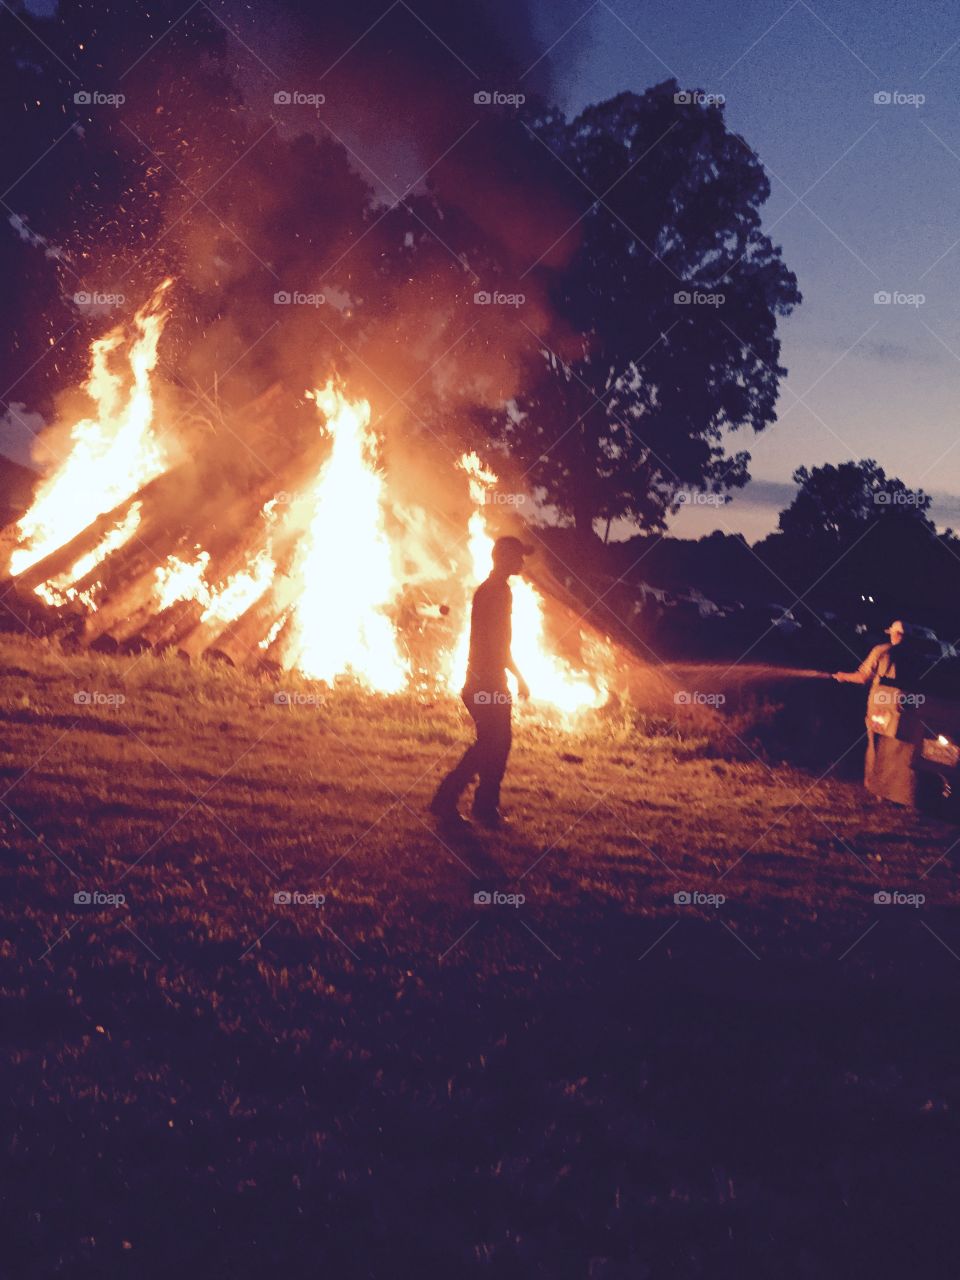 Bonfire party 2015